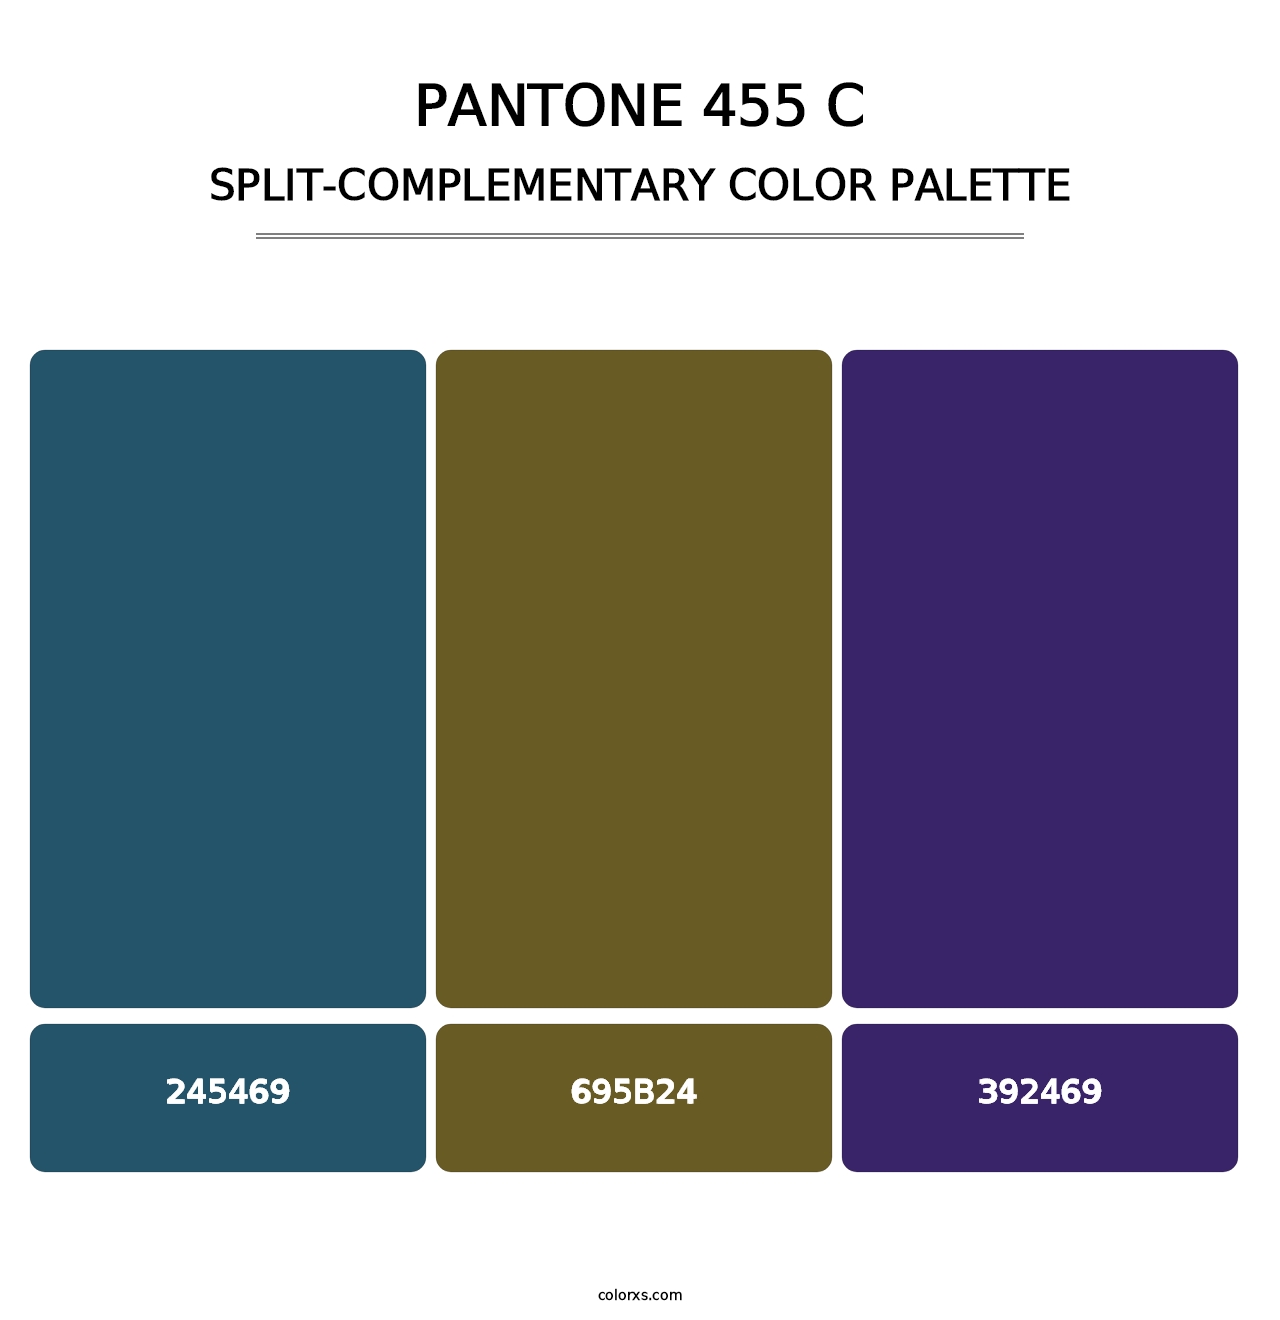 PANTONE 455 C - Split-Complementary Color Palette